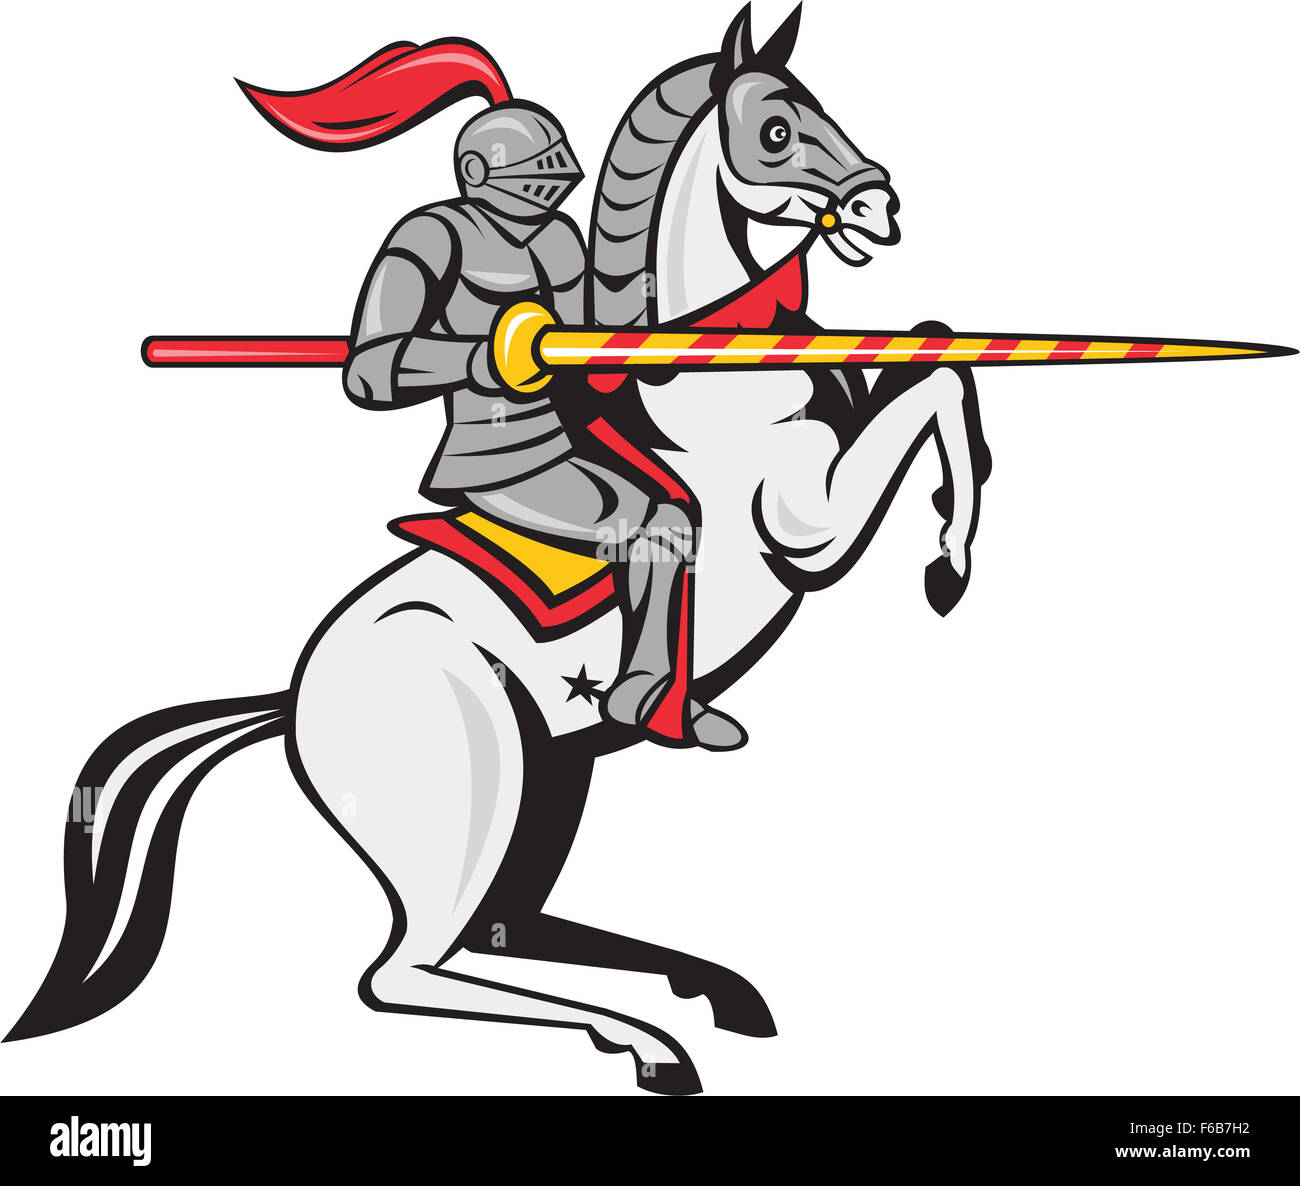 Cartoon-Stil Abbildung von einem Ritter in voller Rüstung hält Lanze Reiten Pferd Ross tänzelnden gesehen von der Seite auf isolierten weißen Hintergrund gesetzt. Stockfoto